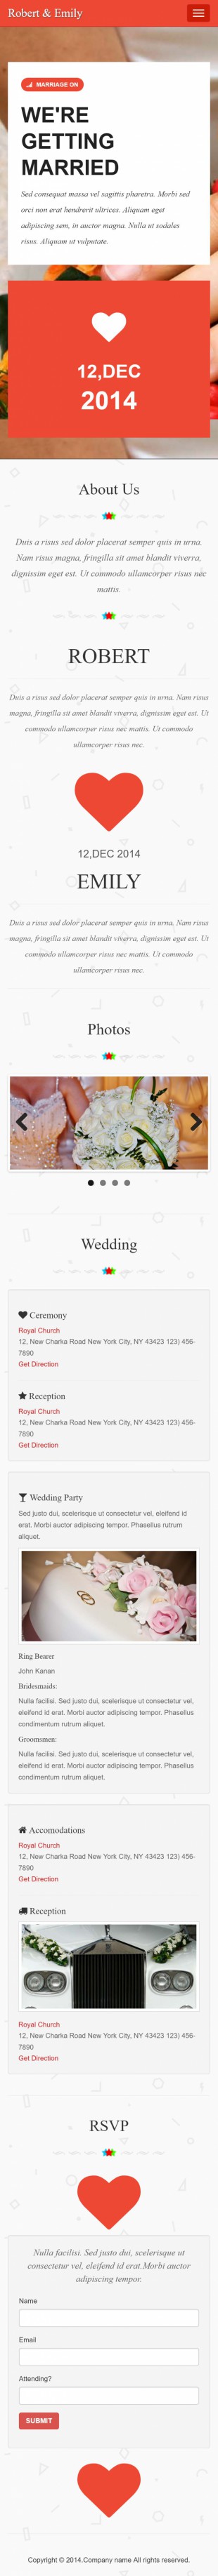 婚礼定制中心类网站建设模板手机图片